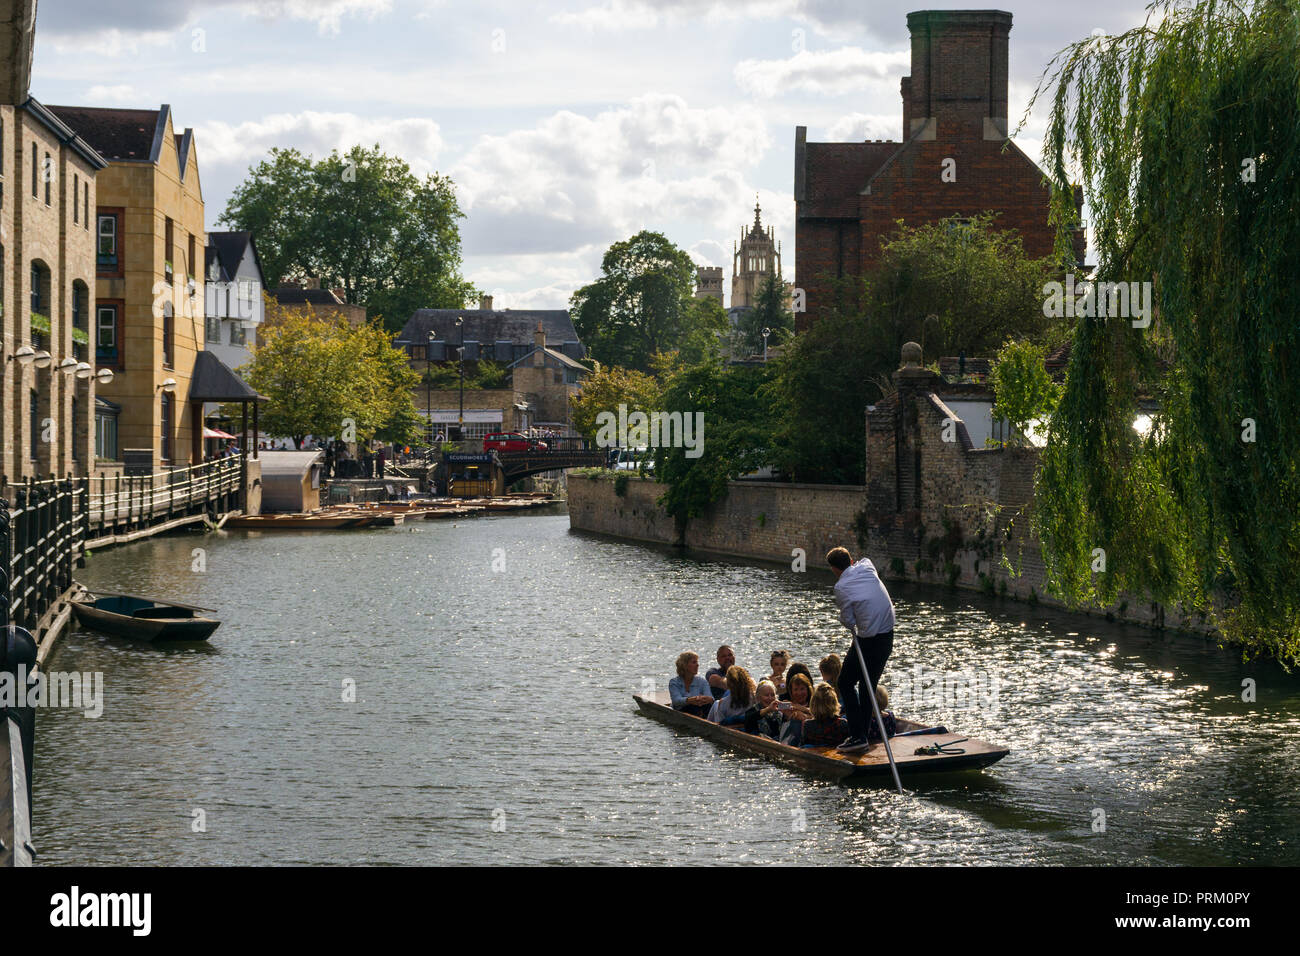 A punt barco con varias personas a bordo del río Cam rumbo al puente de la Magdalena en una soleada tarde de verano, Cambridge, Reino Unido Foto de stock